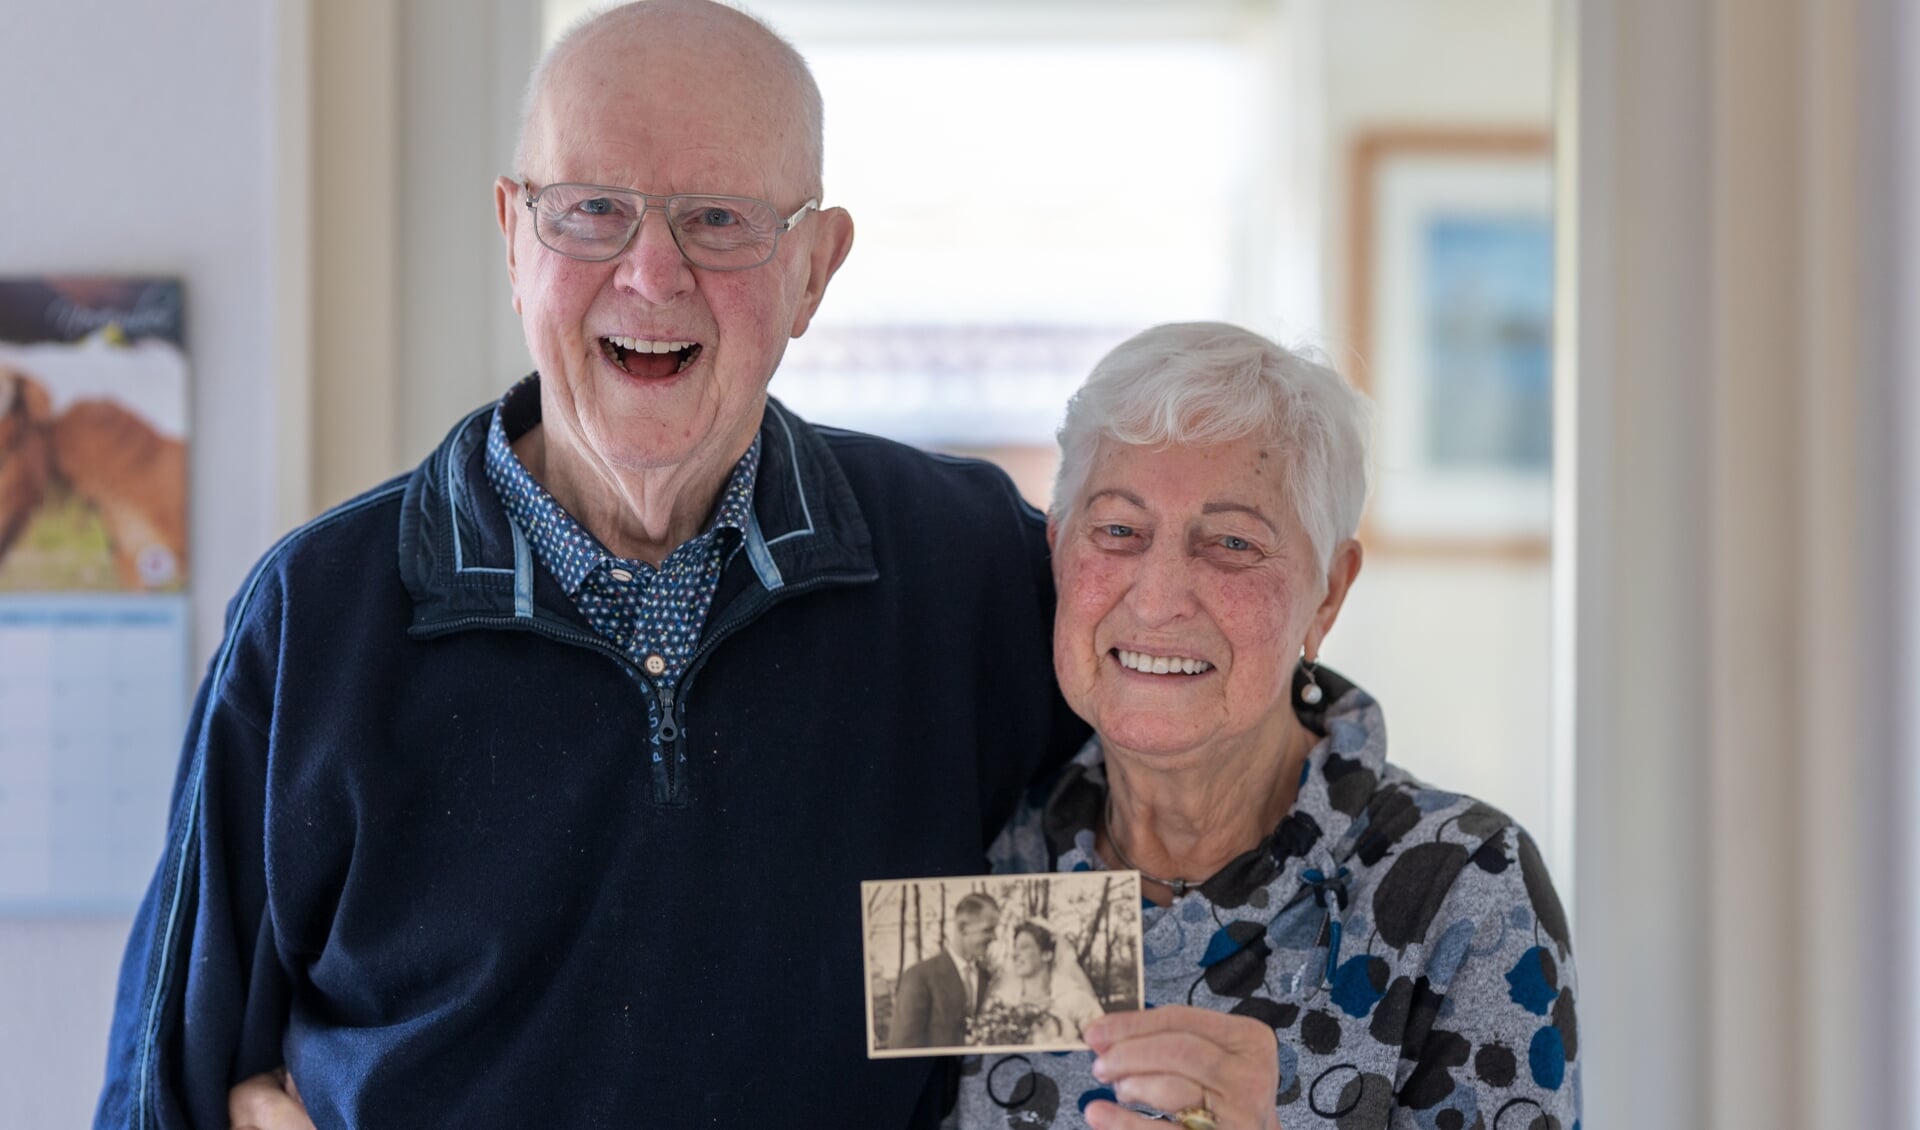 Gerard en Maartje laten lachend een foto zien van hun trouwen in 1951: "Niks veranderd!"